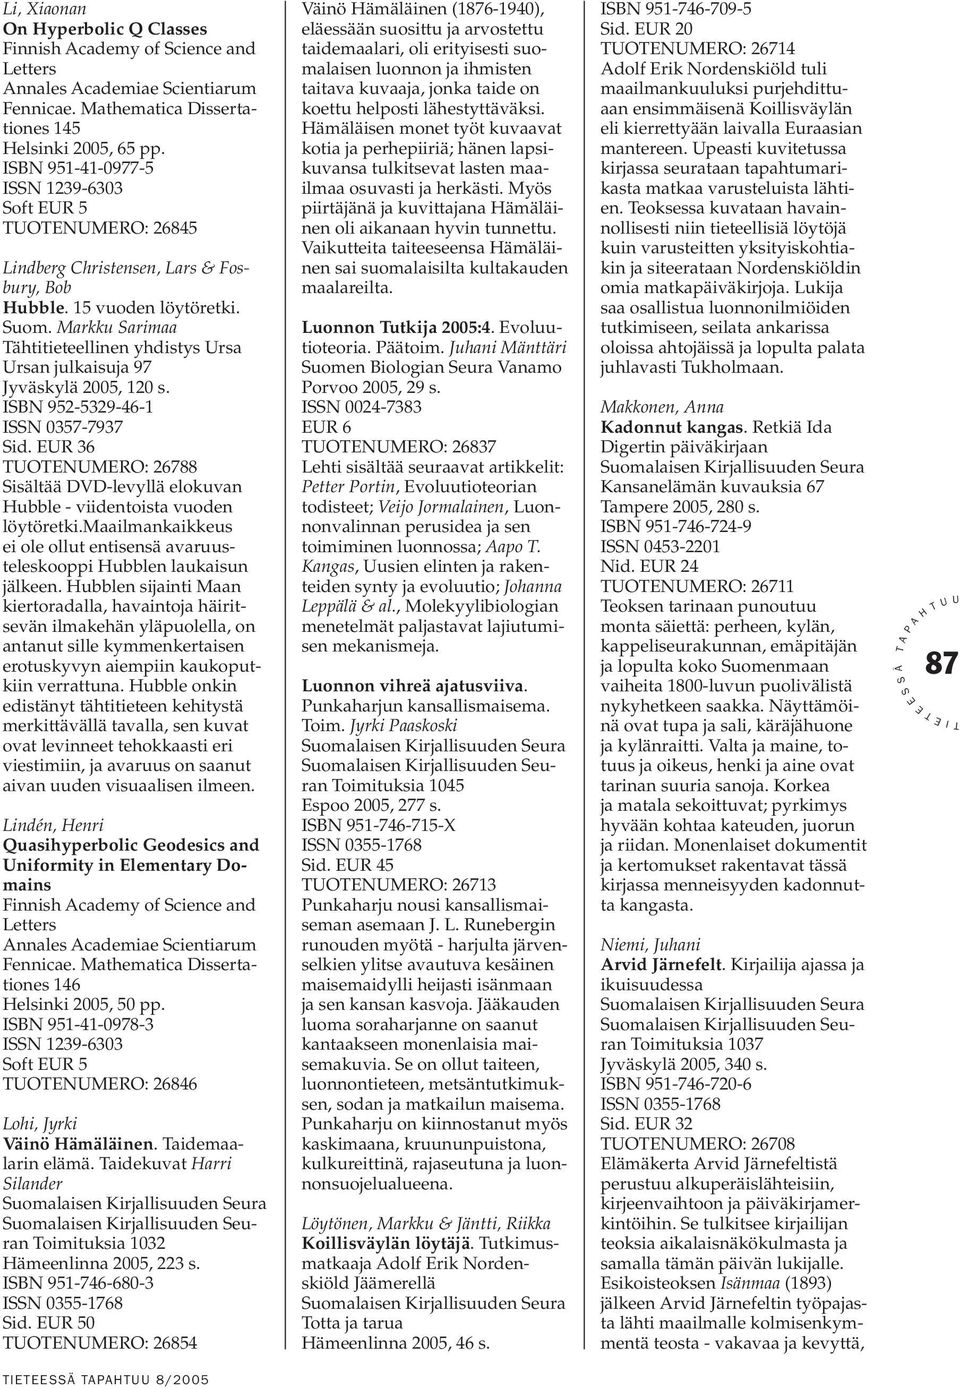 Markku arimaa ähtitieteellinen yhdistys rsa rsan julkaisuja 97 Jyväskylä 2005, 120 s. BN 952-5329-46-1 N 0357-7937 id.